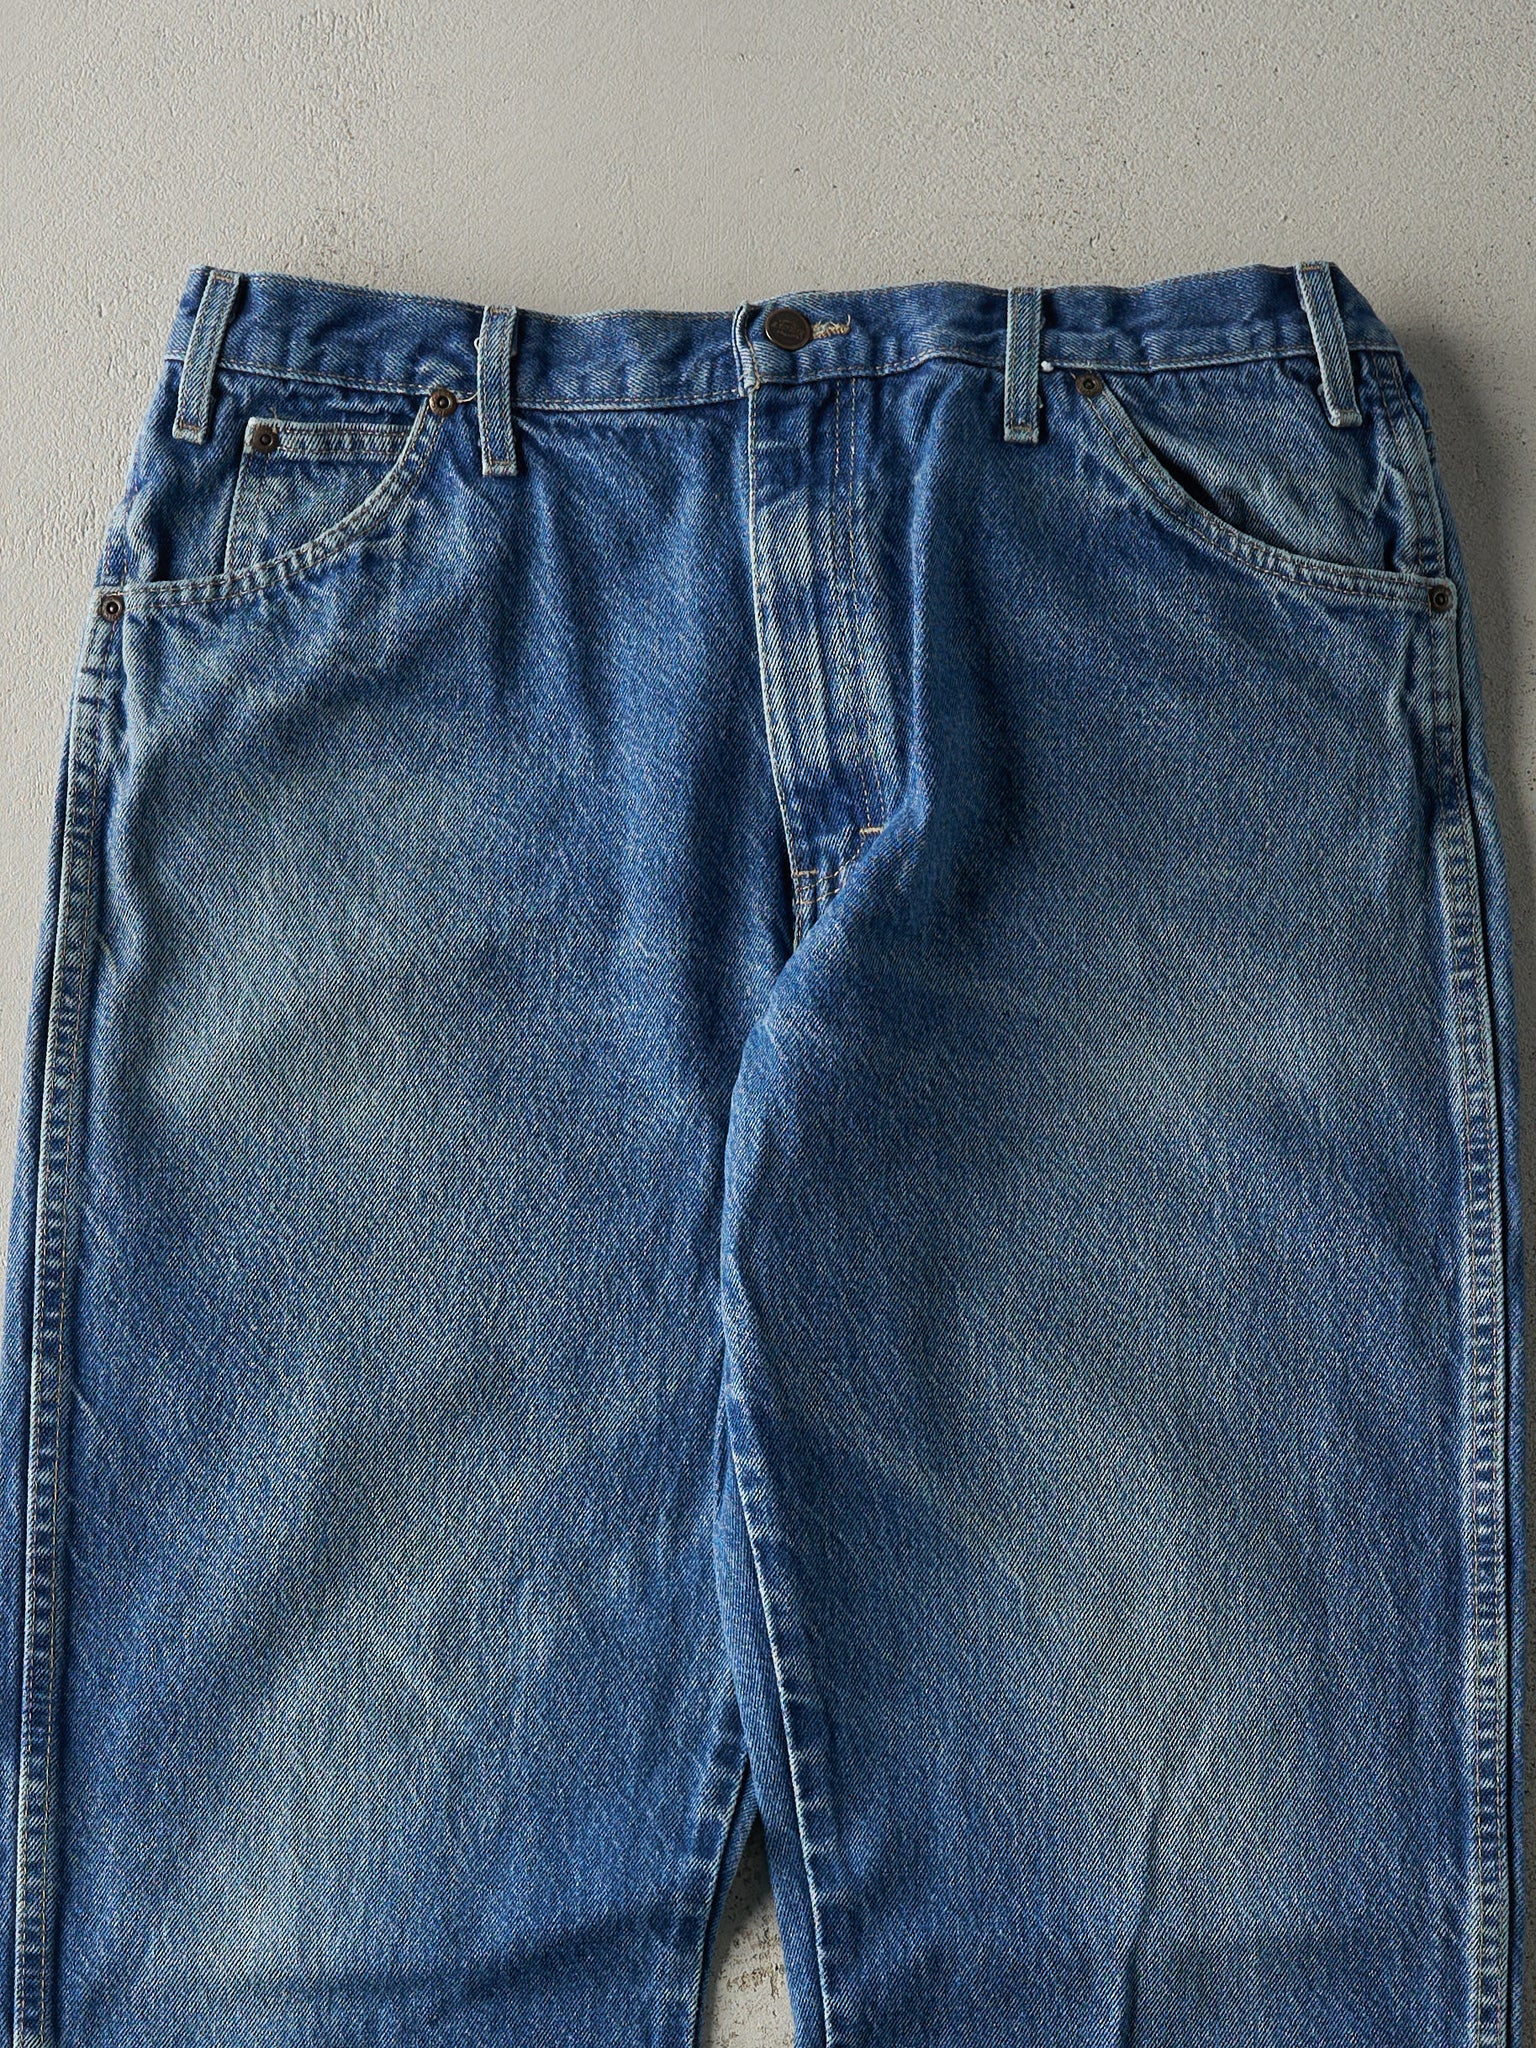 Vintage 90s Mid Wash Dickies Jeans (36x31.5)